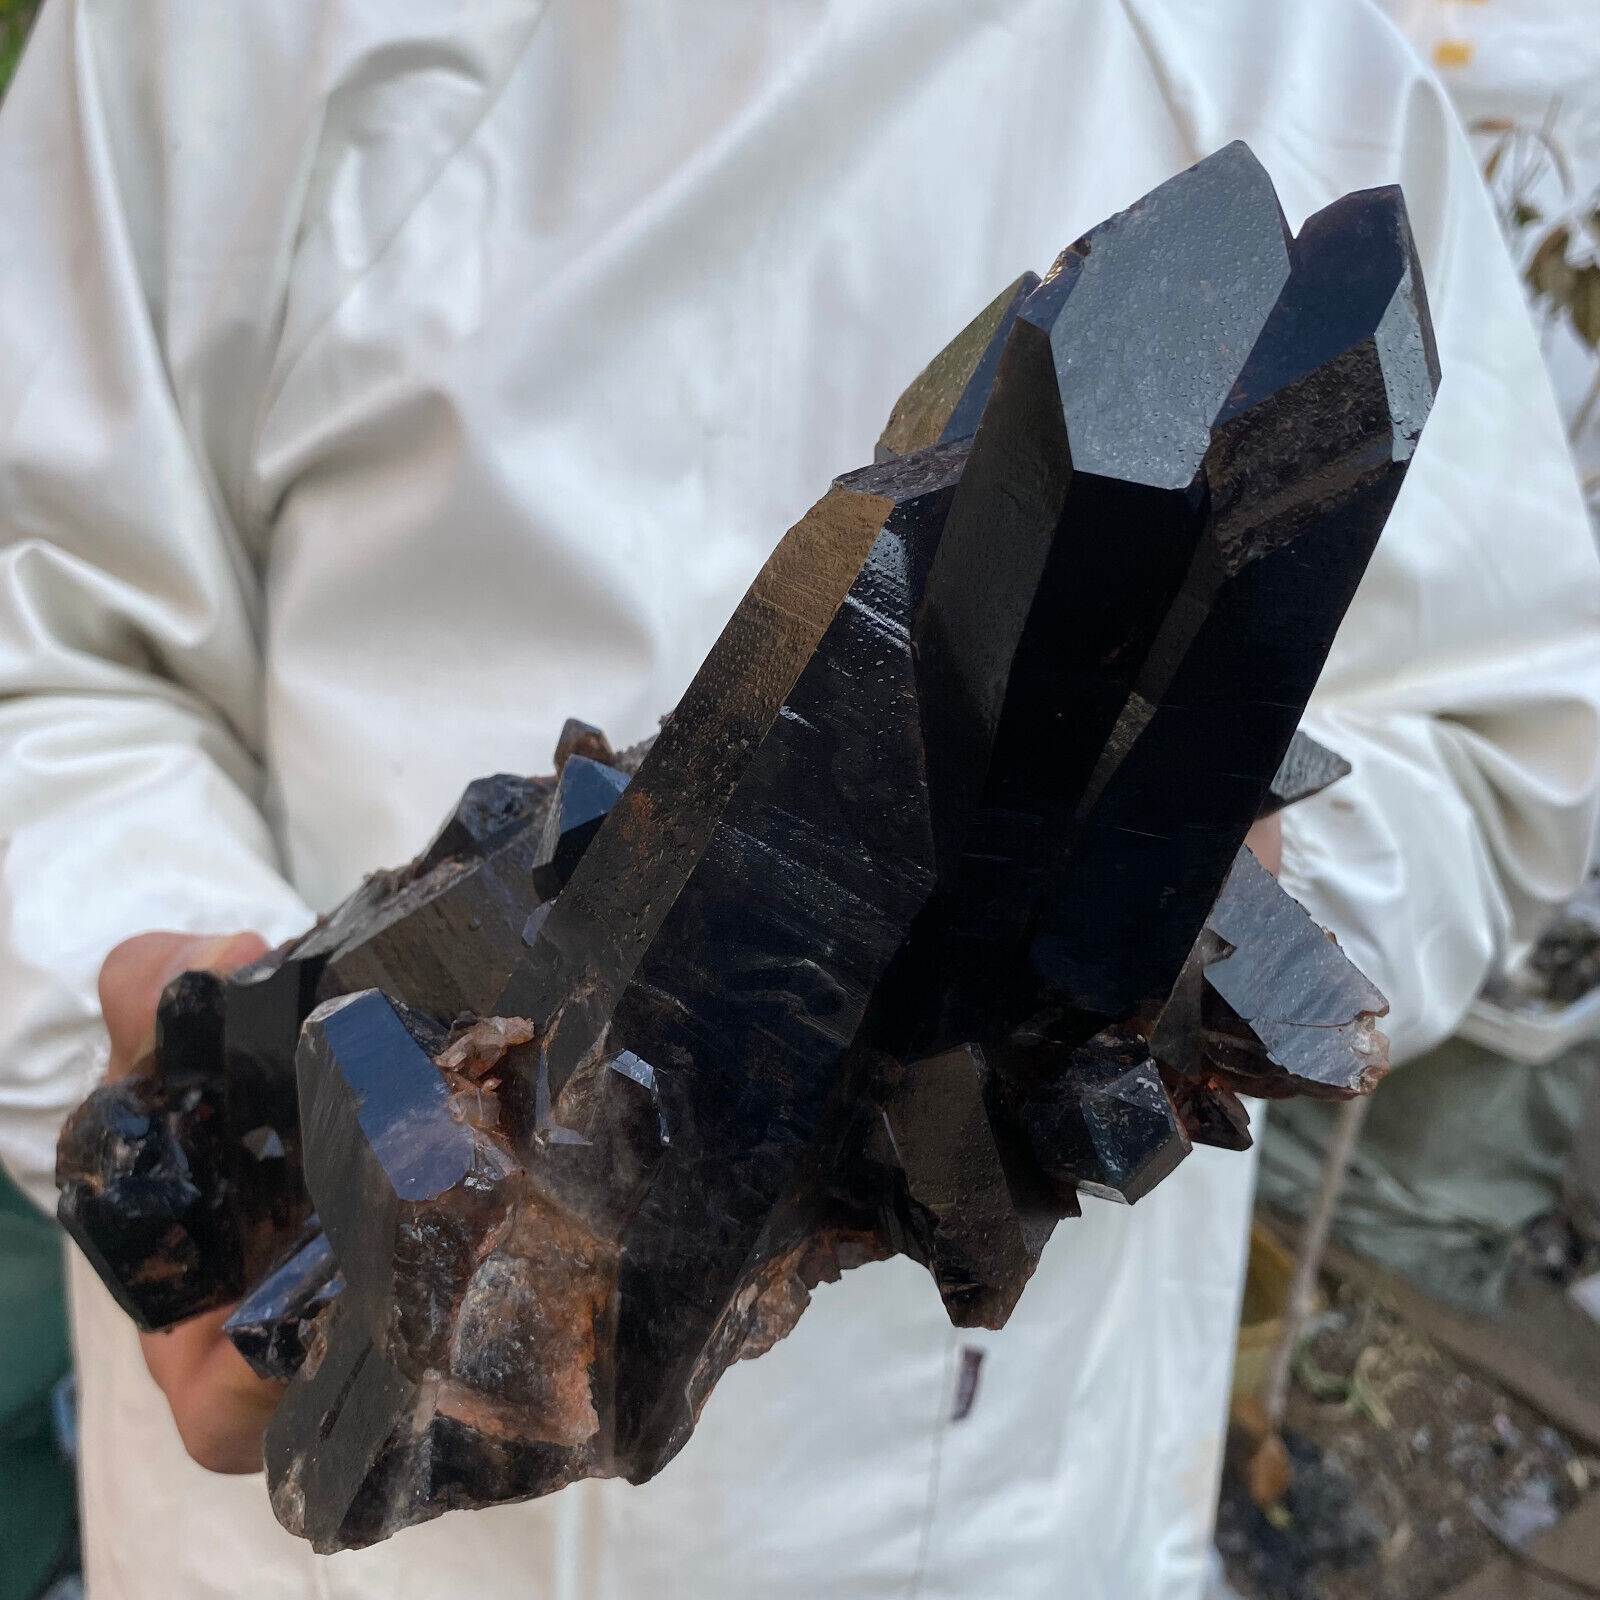 5.7lb Large Natural Black Smoky Quartz Crystal Cluster Raw Mineral Specimen